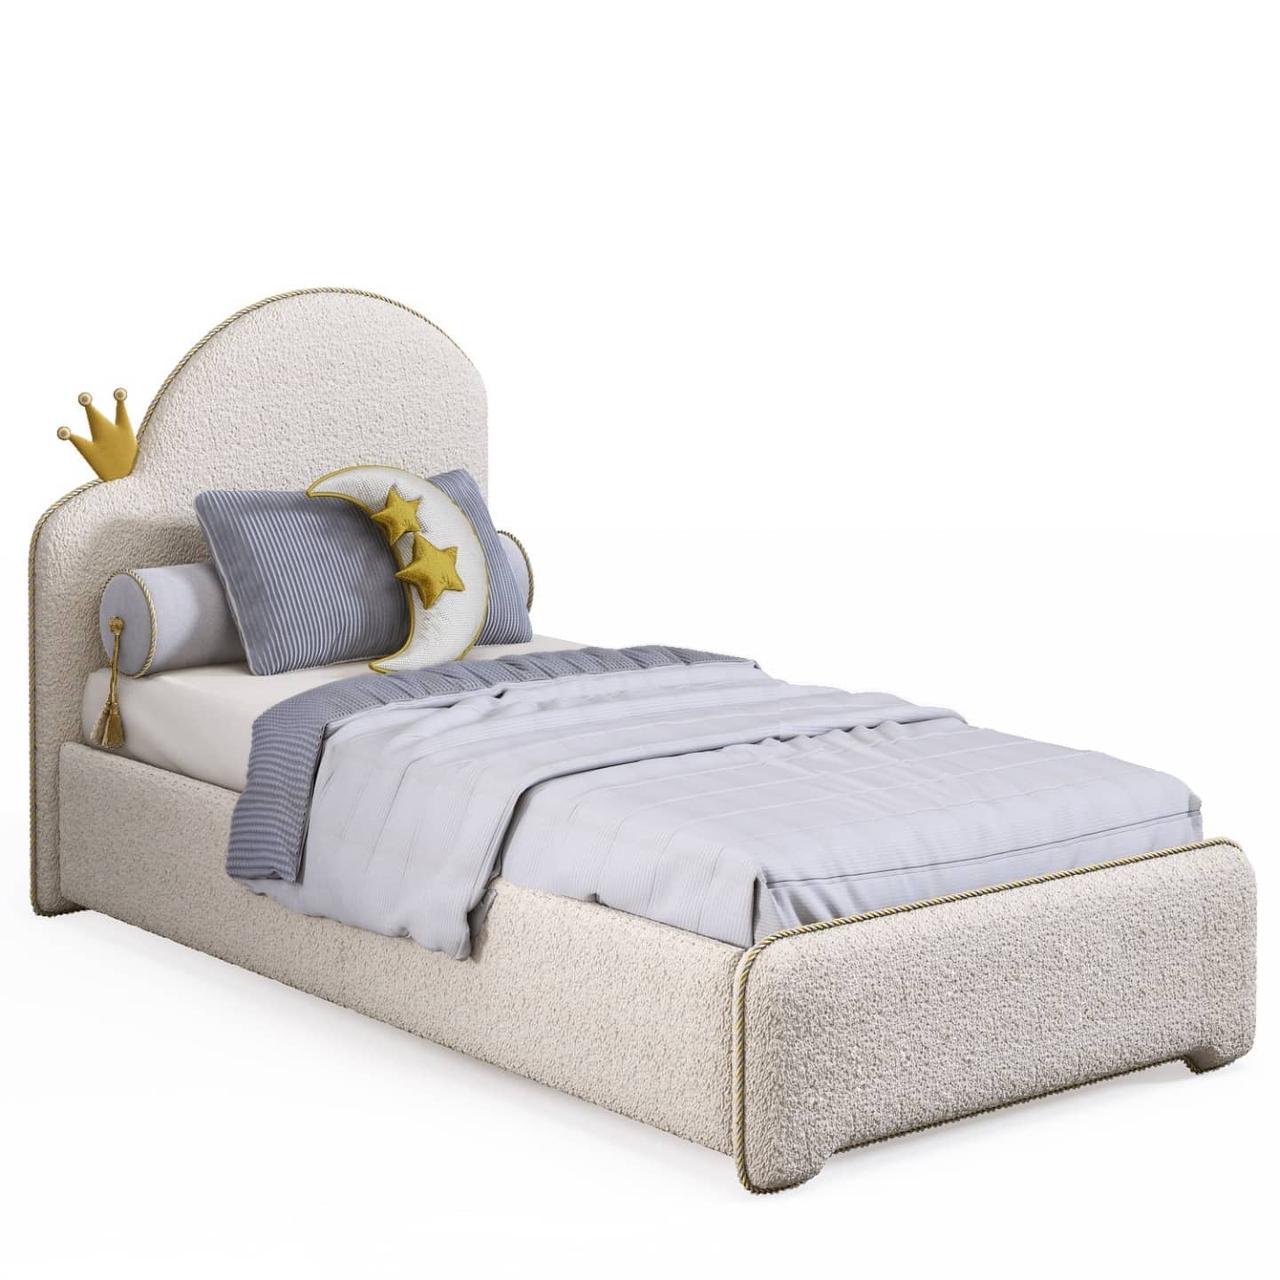 Дитяче ліжко для підлітків MeBelle SKAYA 2 80х190 см односпальне м'яке, молочно-біле